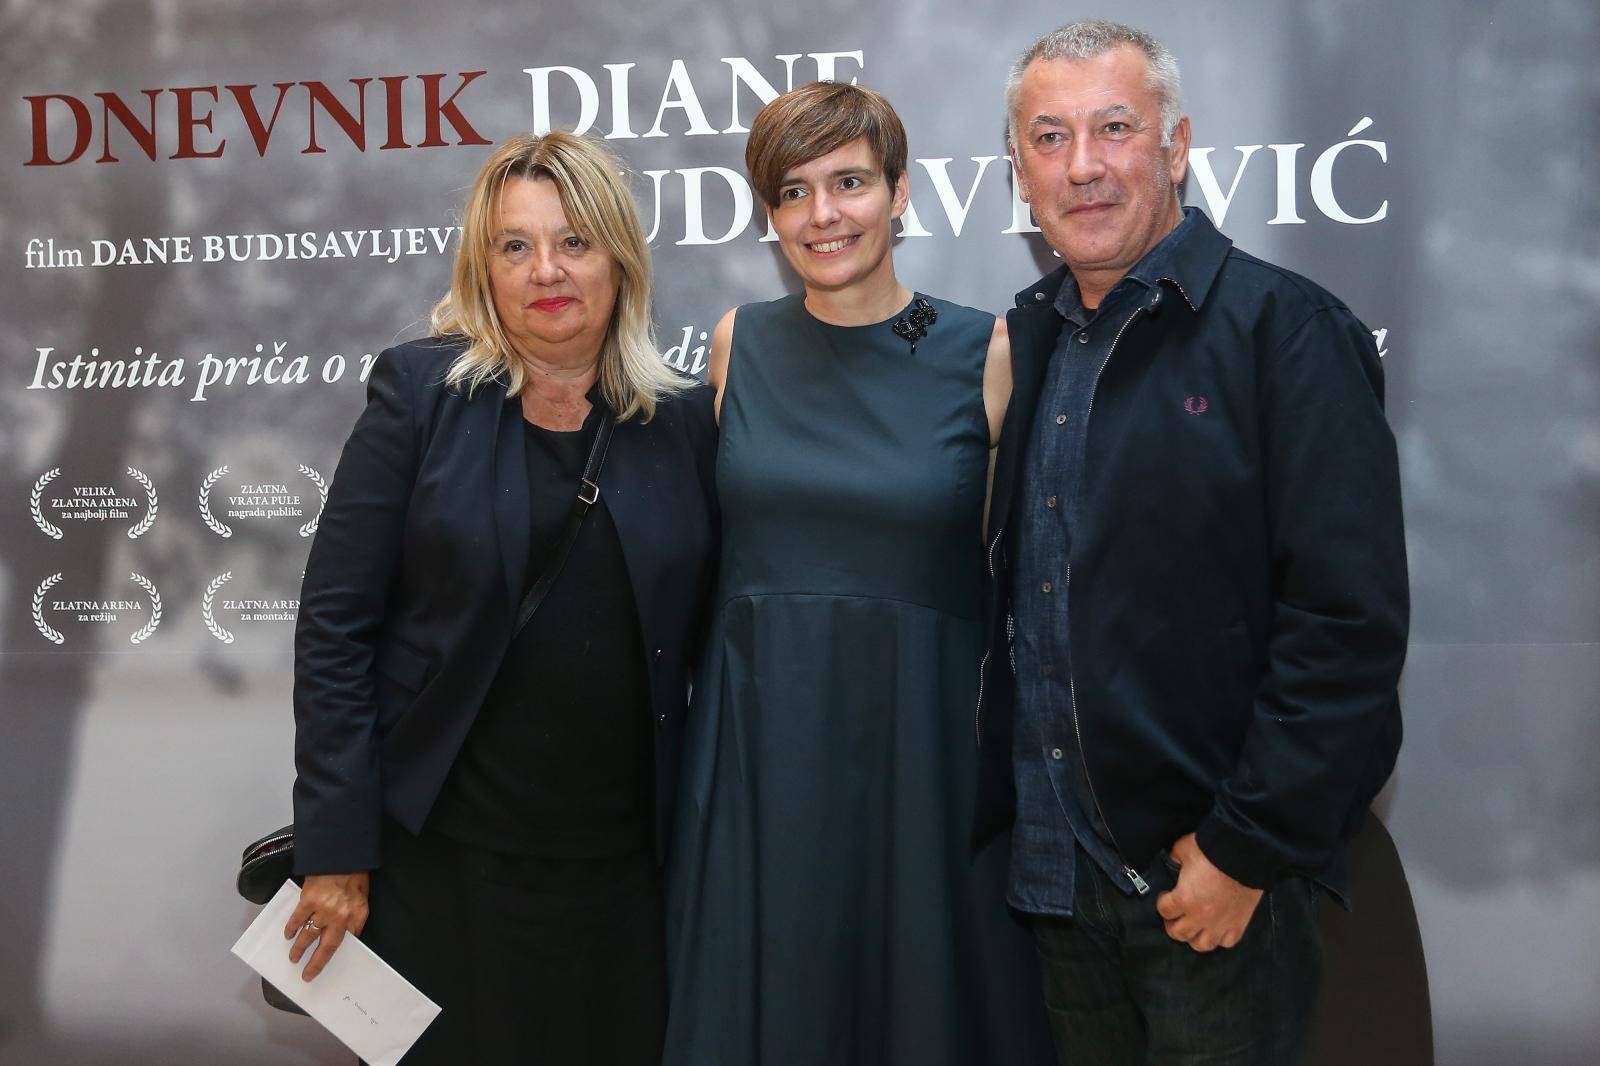 Zagreb: SveÄana zagrebaÄka premijera filma Dnevnik Diane BudisavljeviÄ